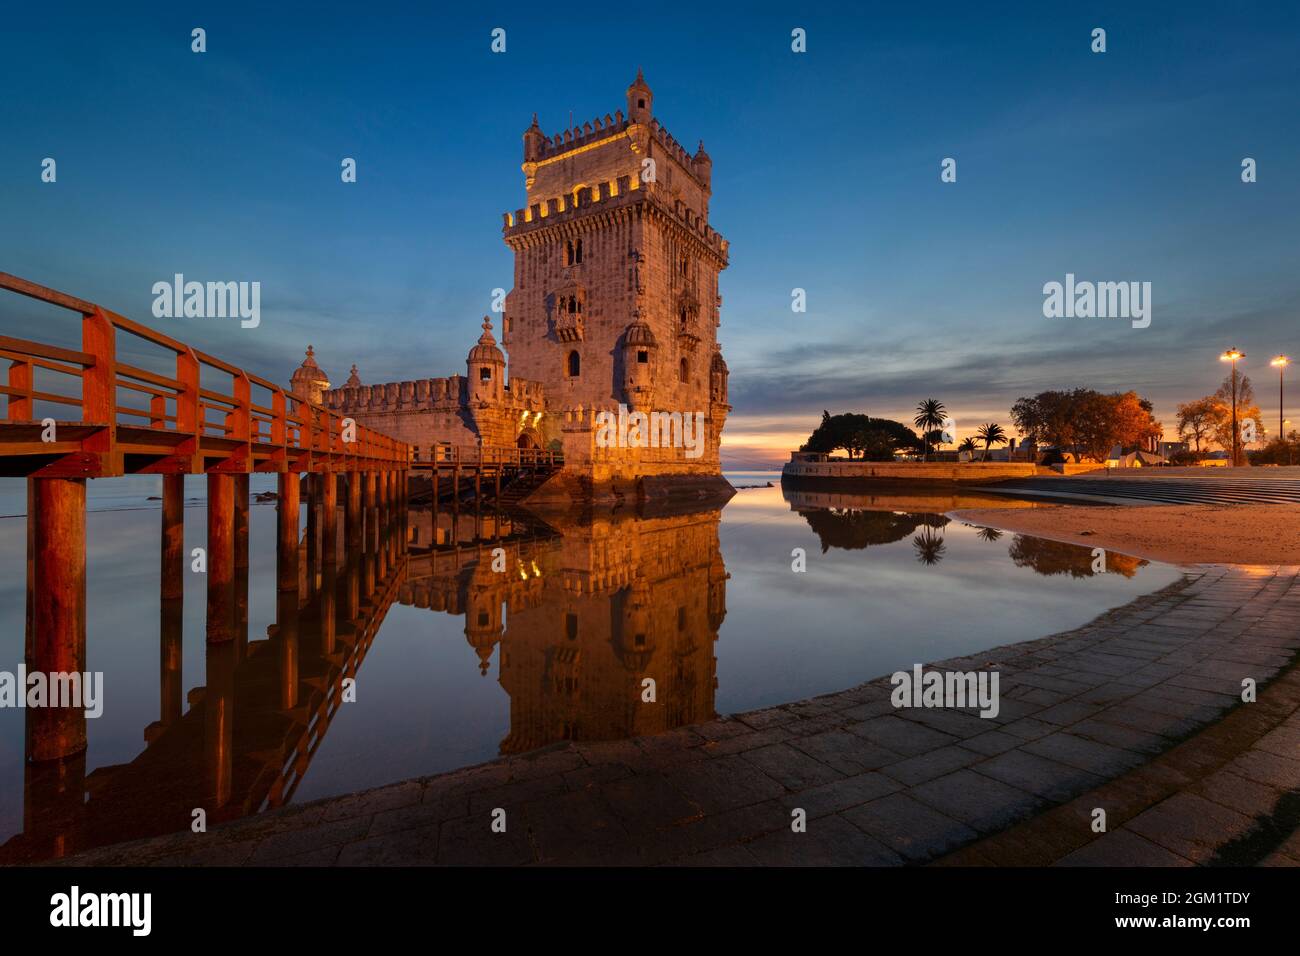 Vista de la emblemática Torre de Belem (Torre de Belem) a orillas del río Tajo, en la ciudad de Lisboa, Portugal. Foto de stock